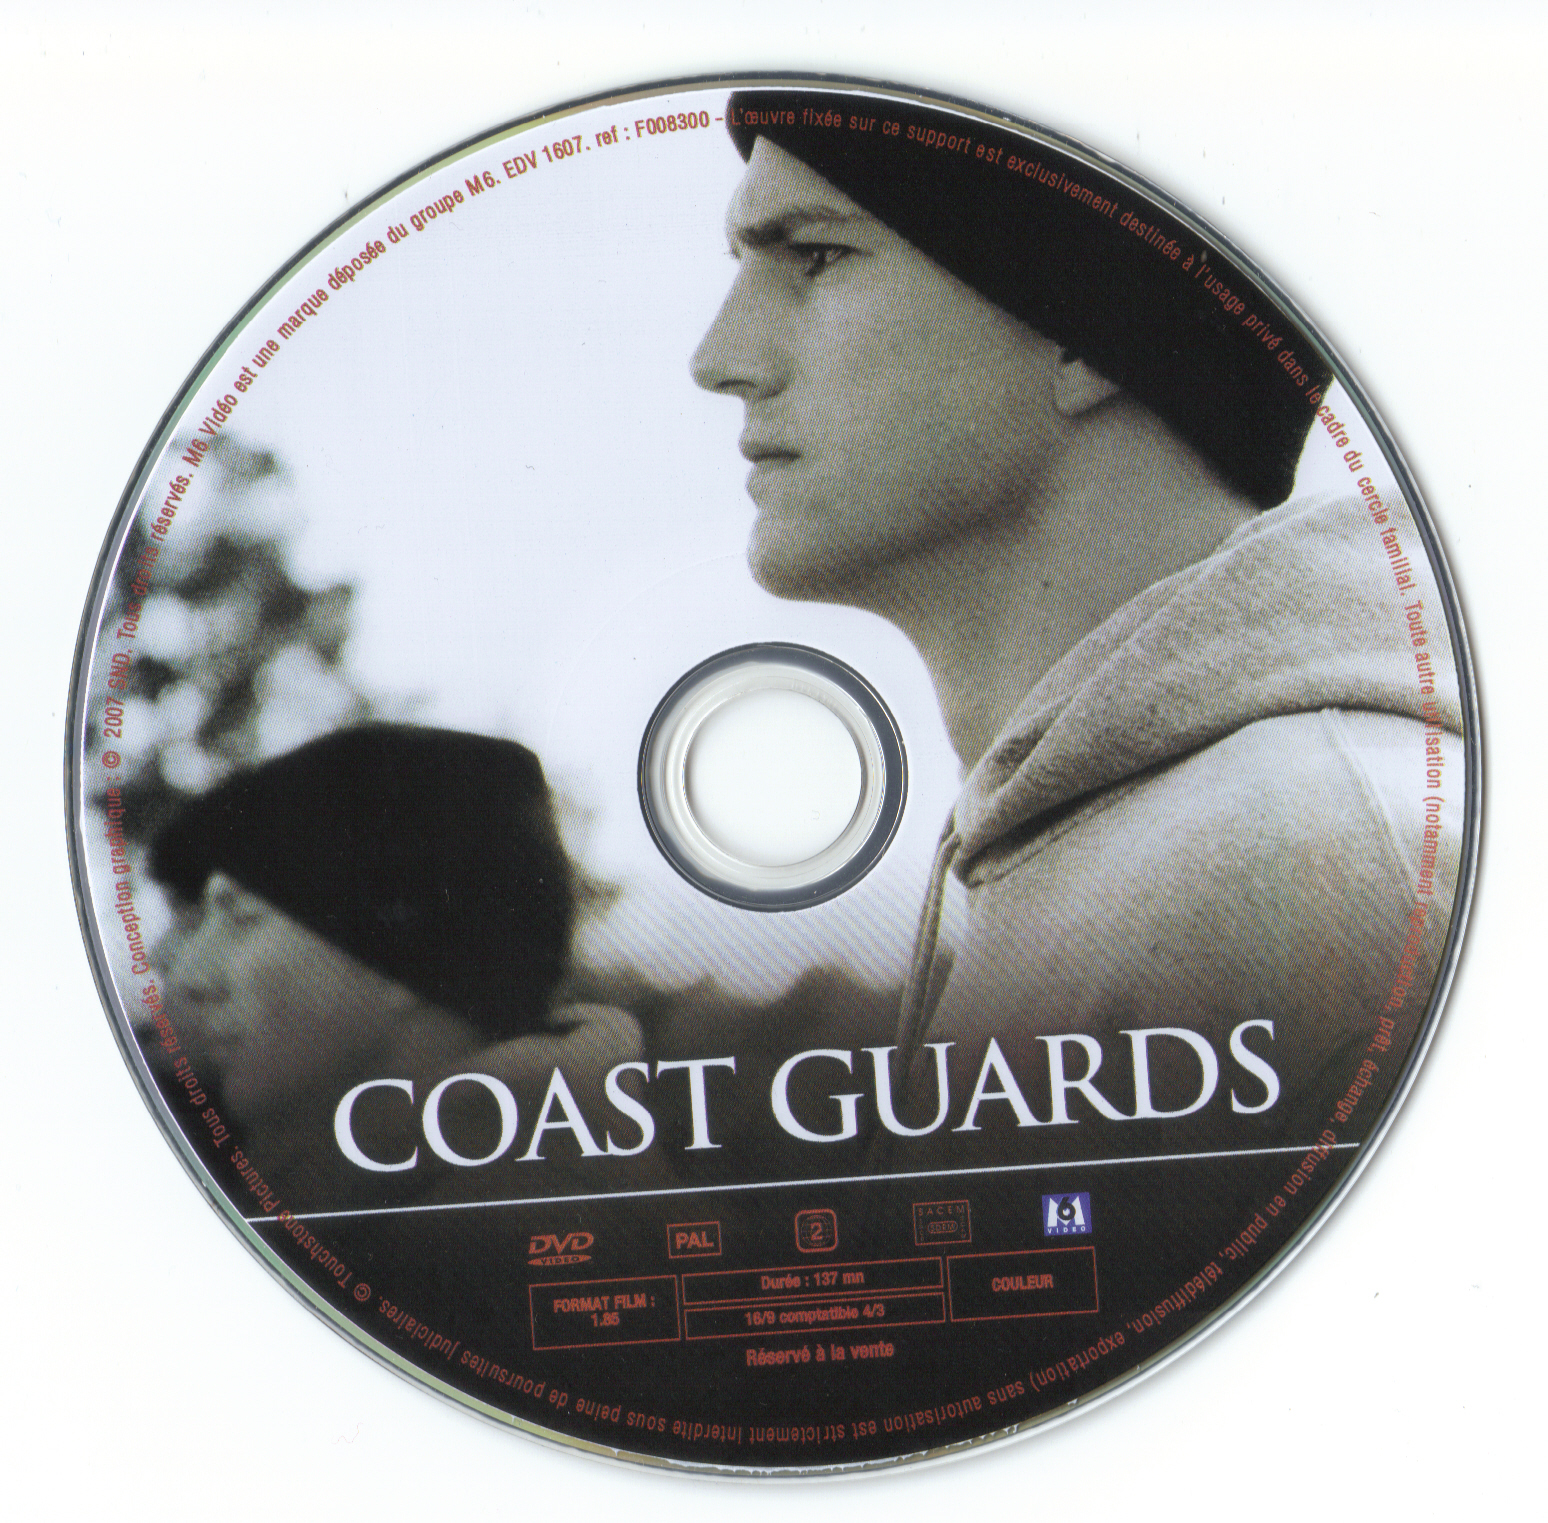 Coast guards